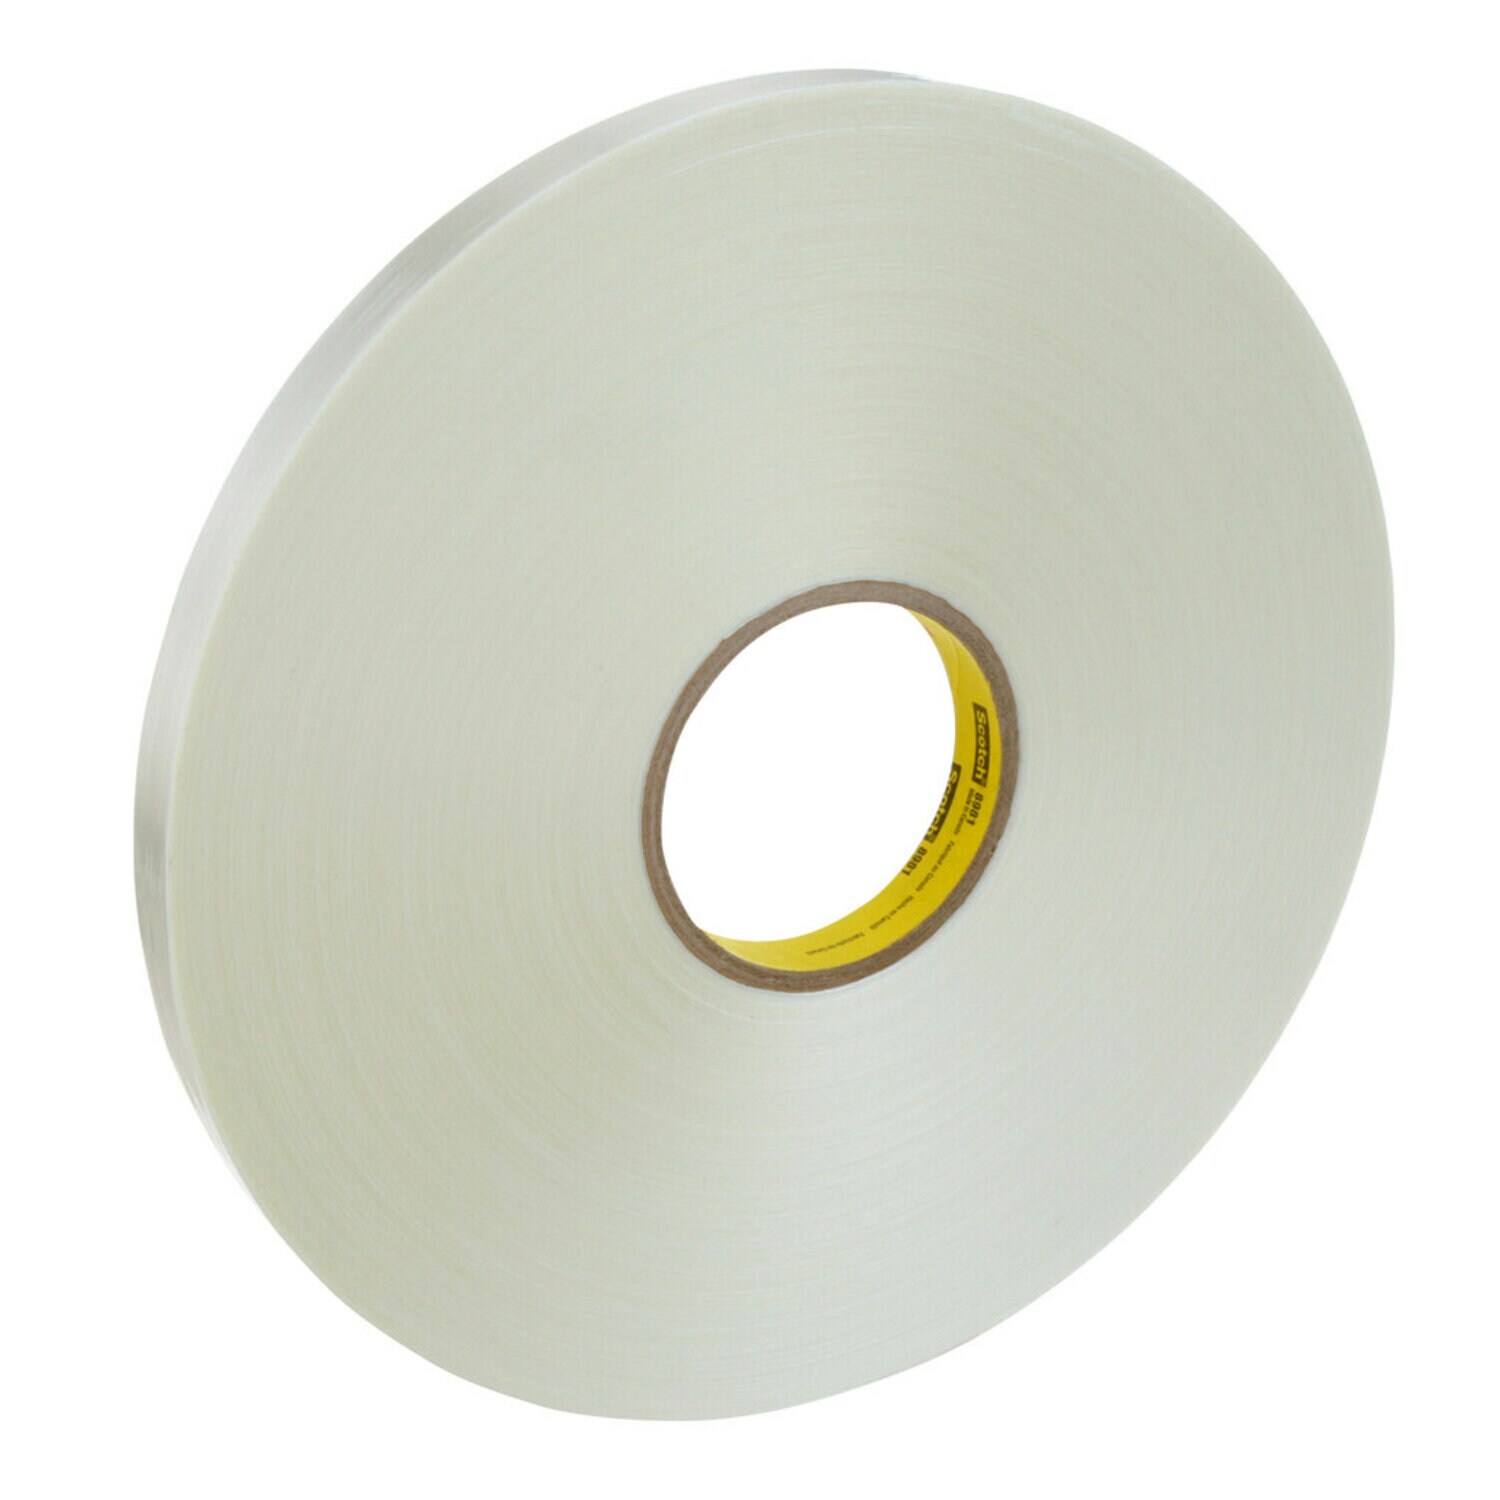 7000123840 - Scotch Filament Tape 8981, Clear, 12 mm x 330 m, 6.6 mil, 12 rolls per
case